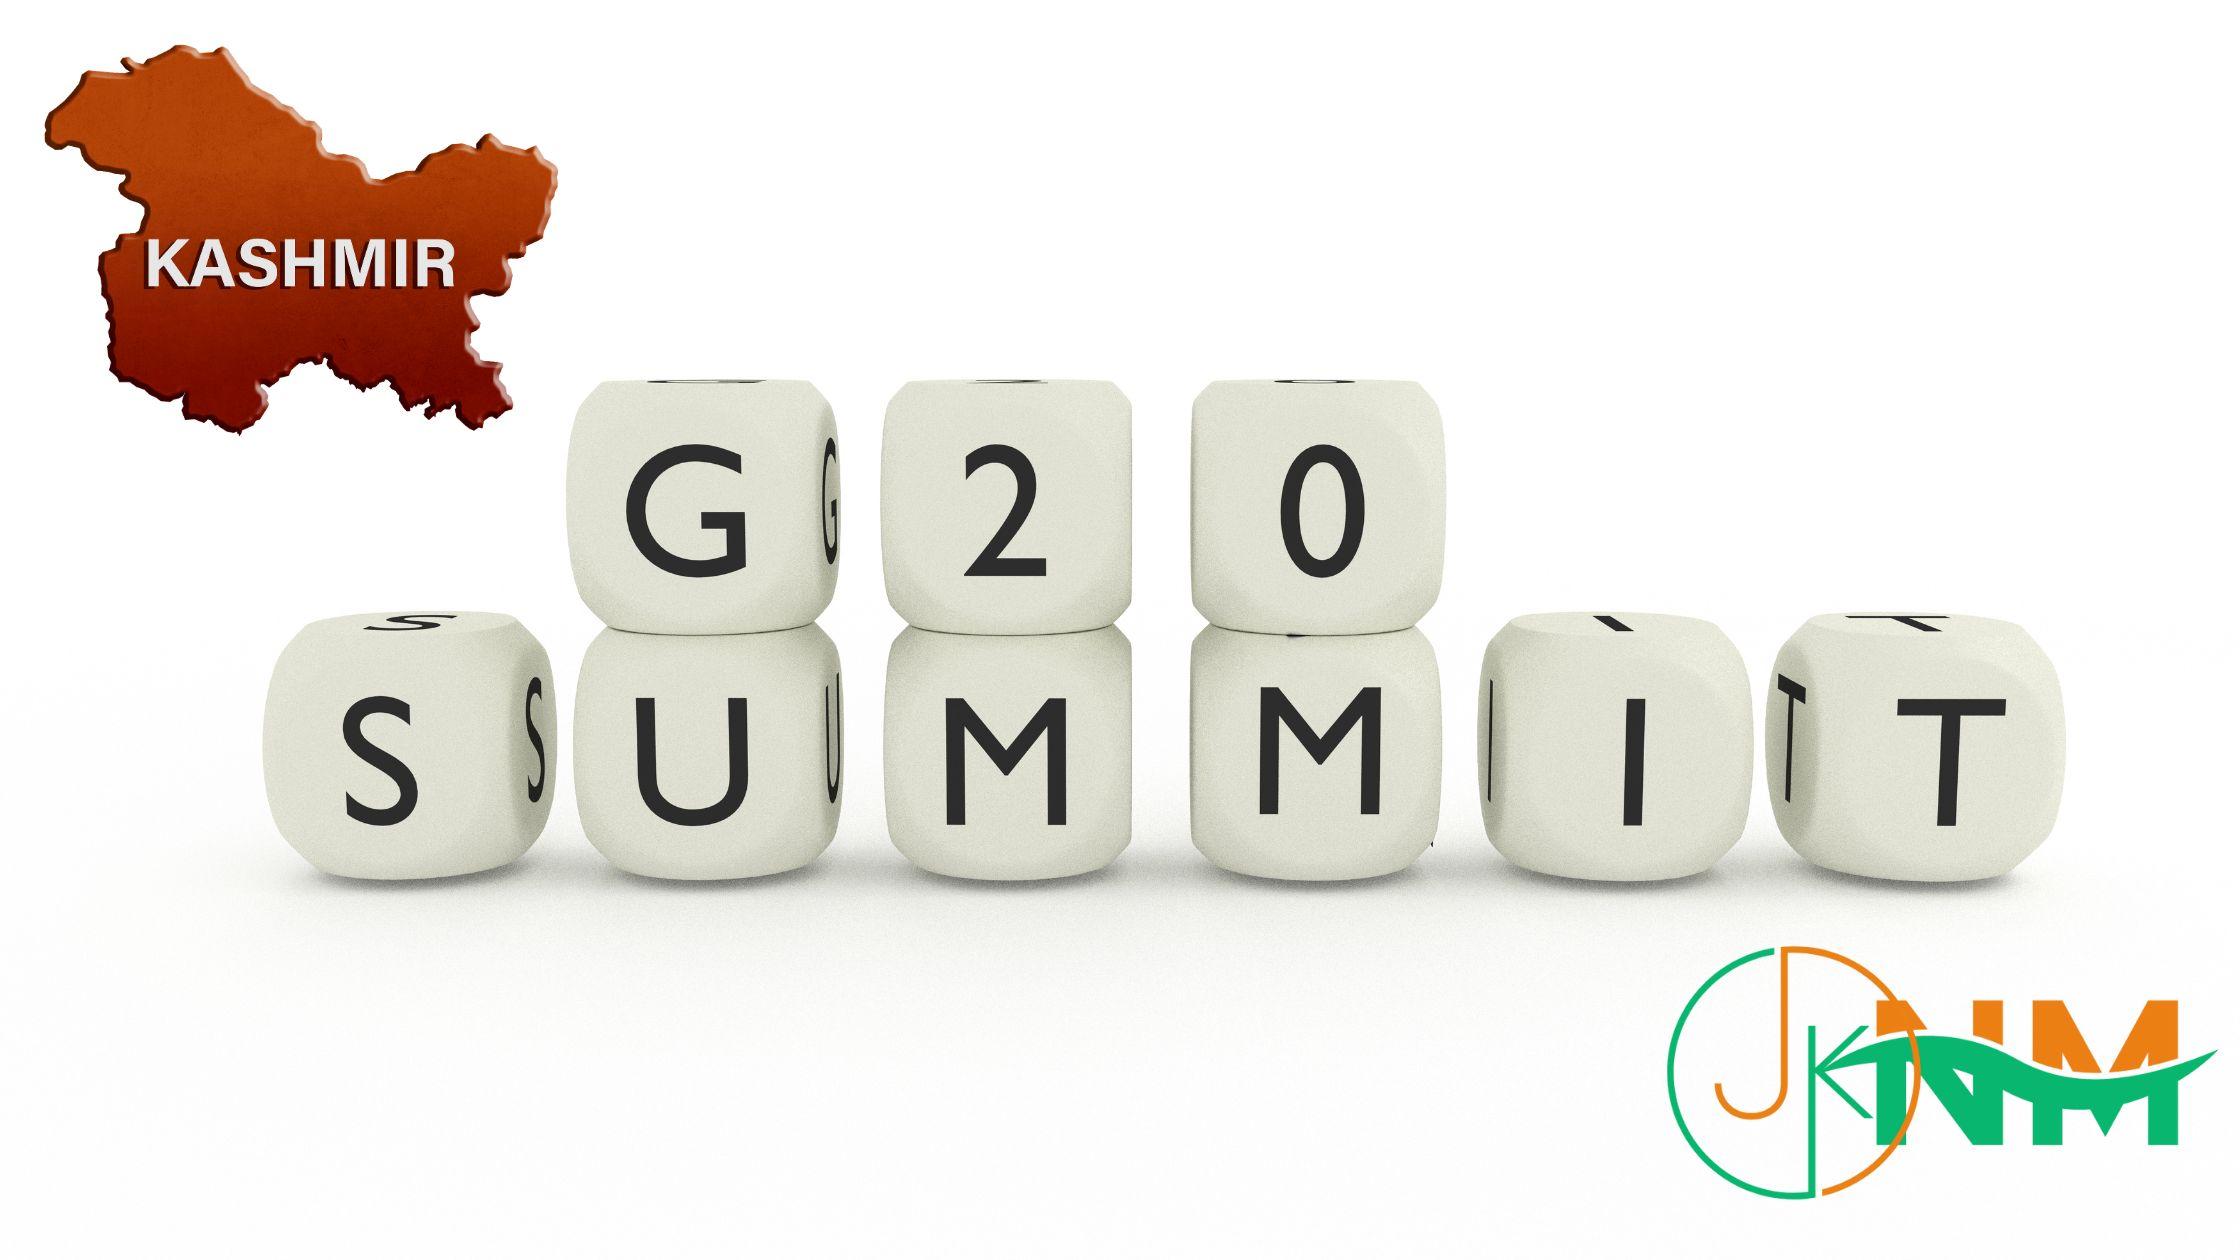 G20 Summit in Kasmir